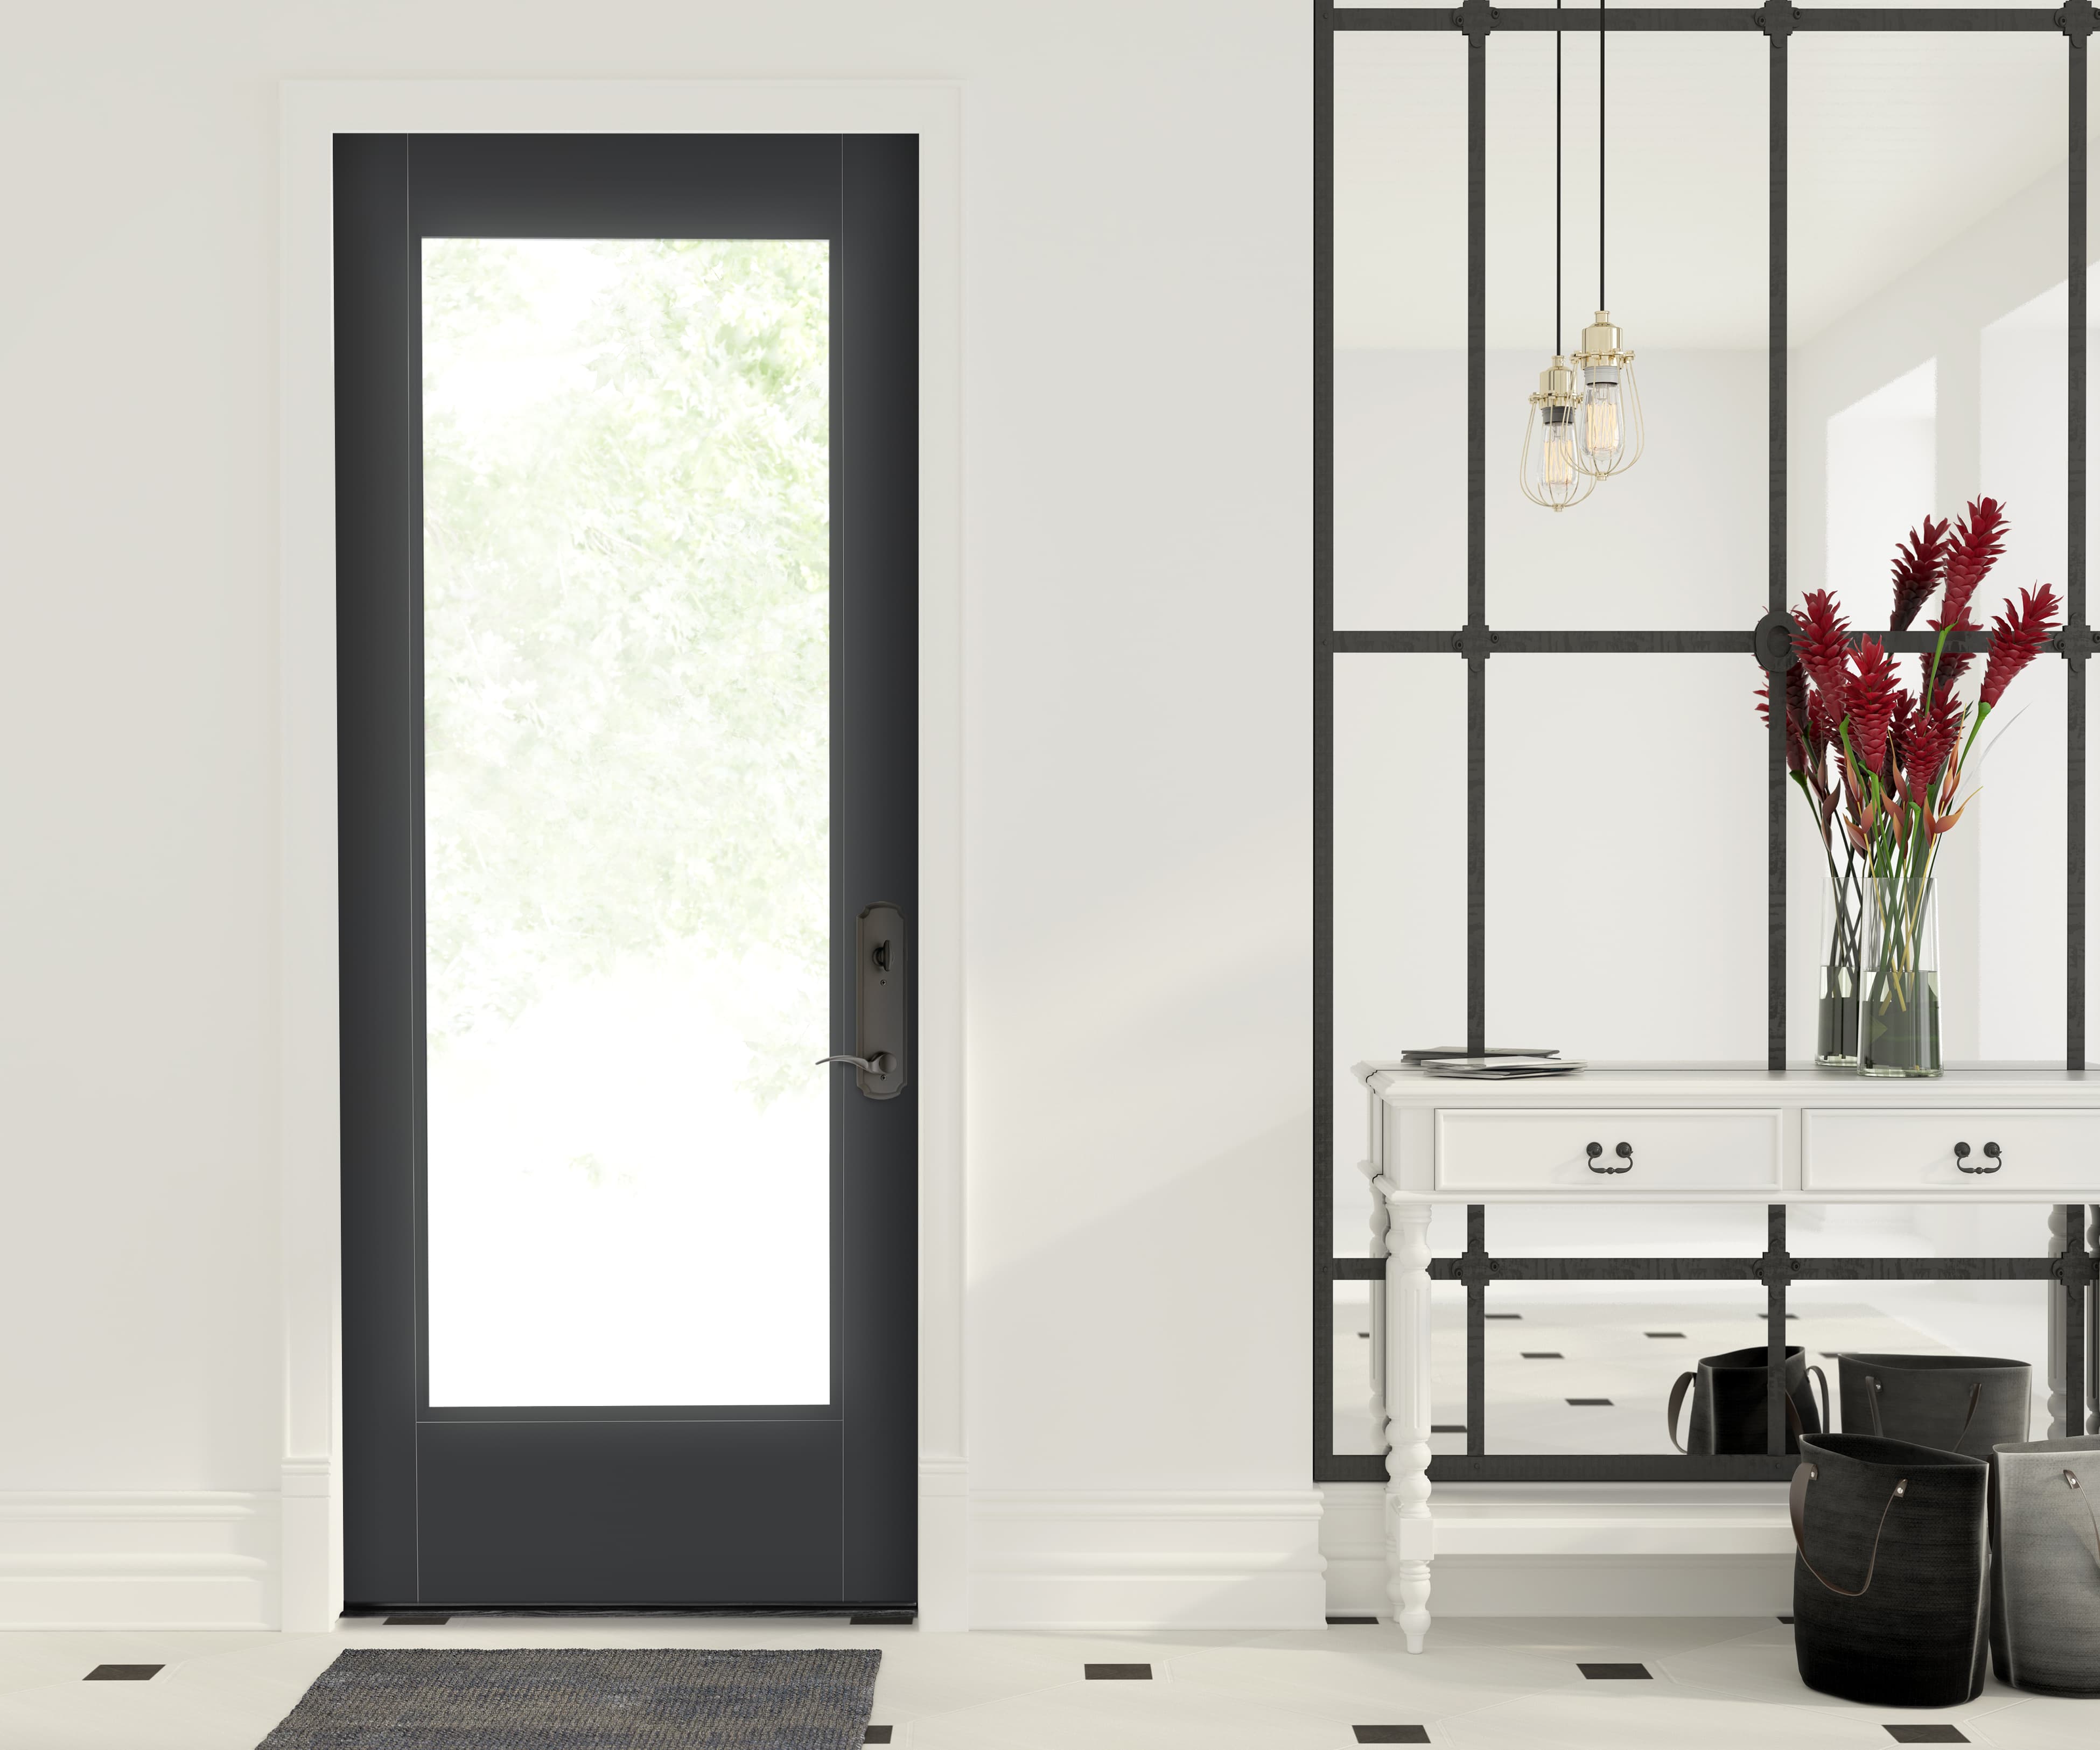 Full Glass Exterior Door Highlights Minimalist Design | Pella